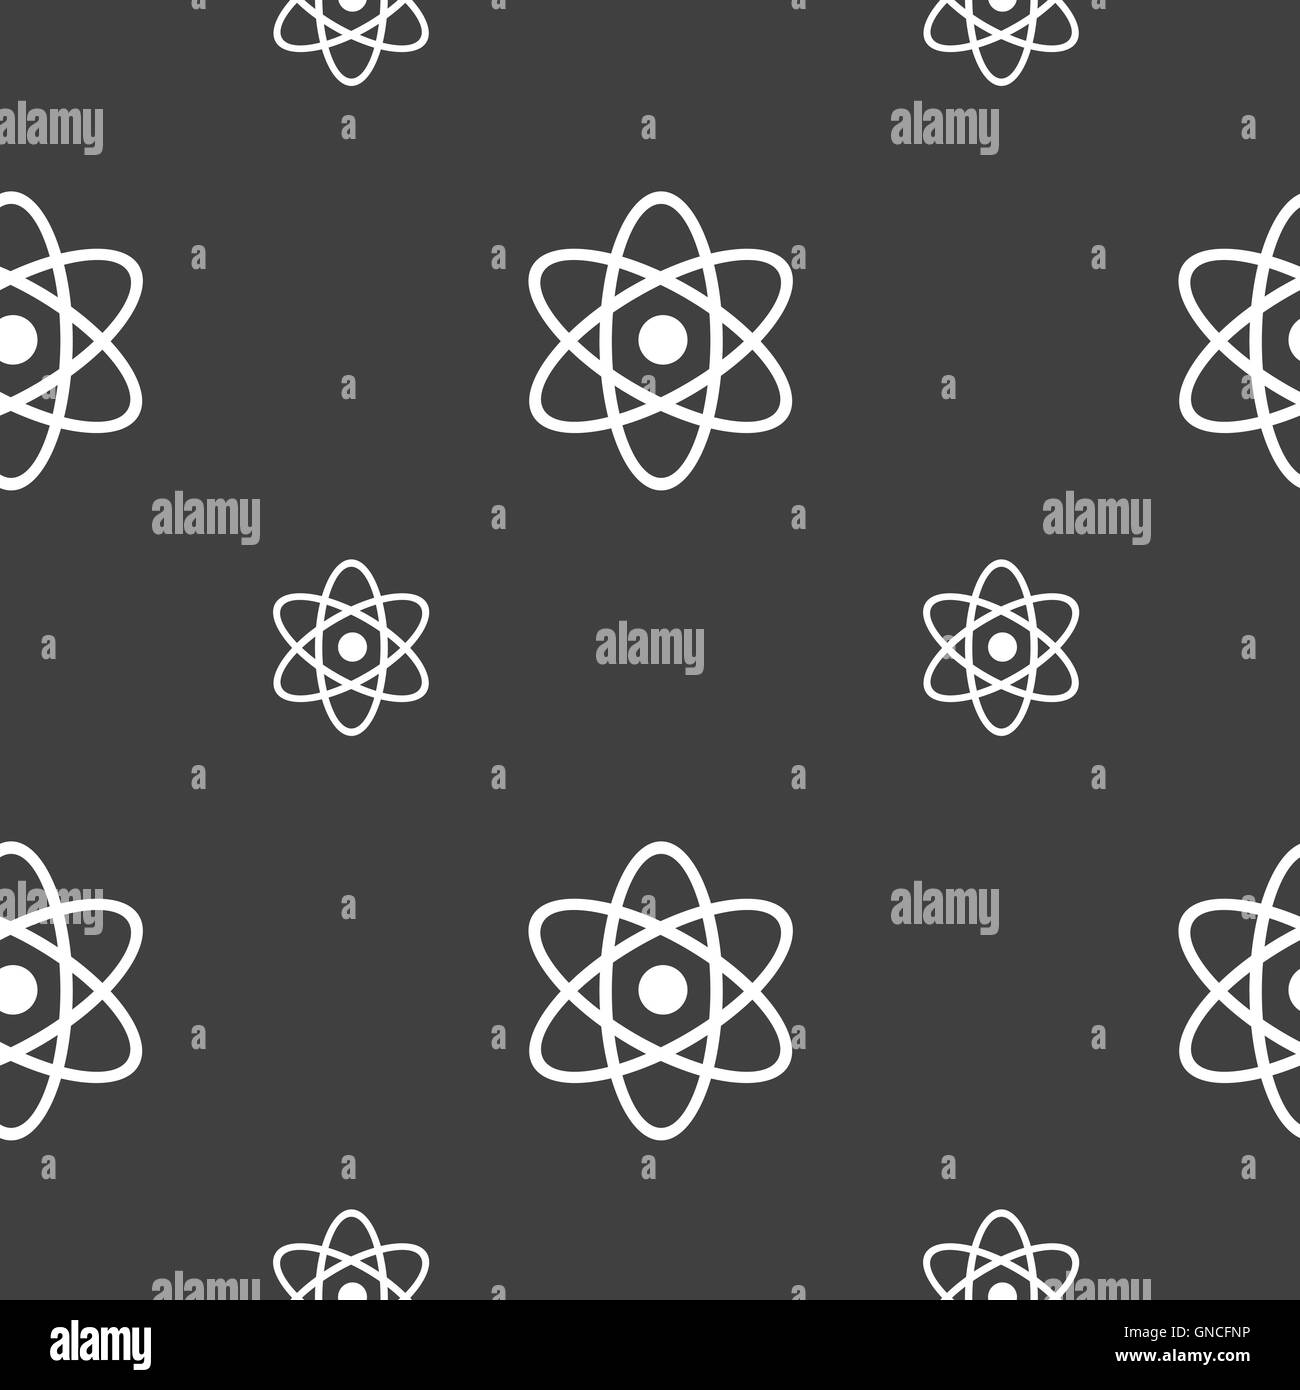 Atom, Physik Symbol Zeichen. Nahtlose Muster auf einem grauen Hintergrund. Vektor Stock Vektor